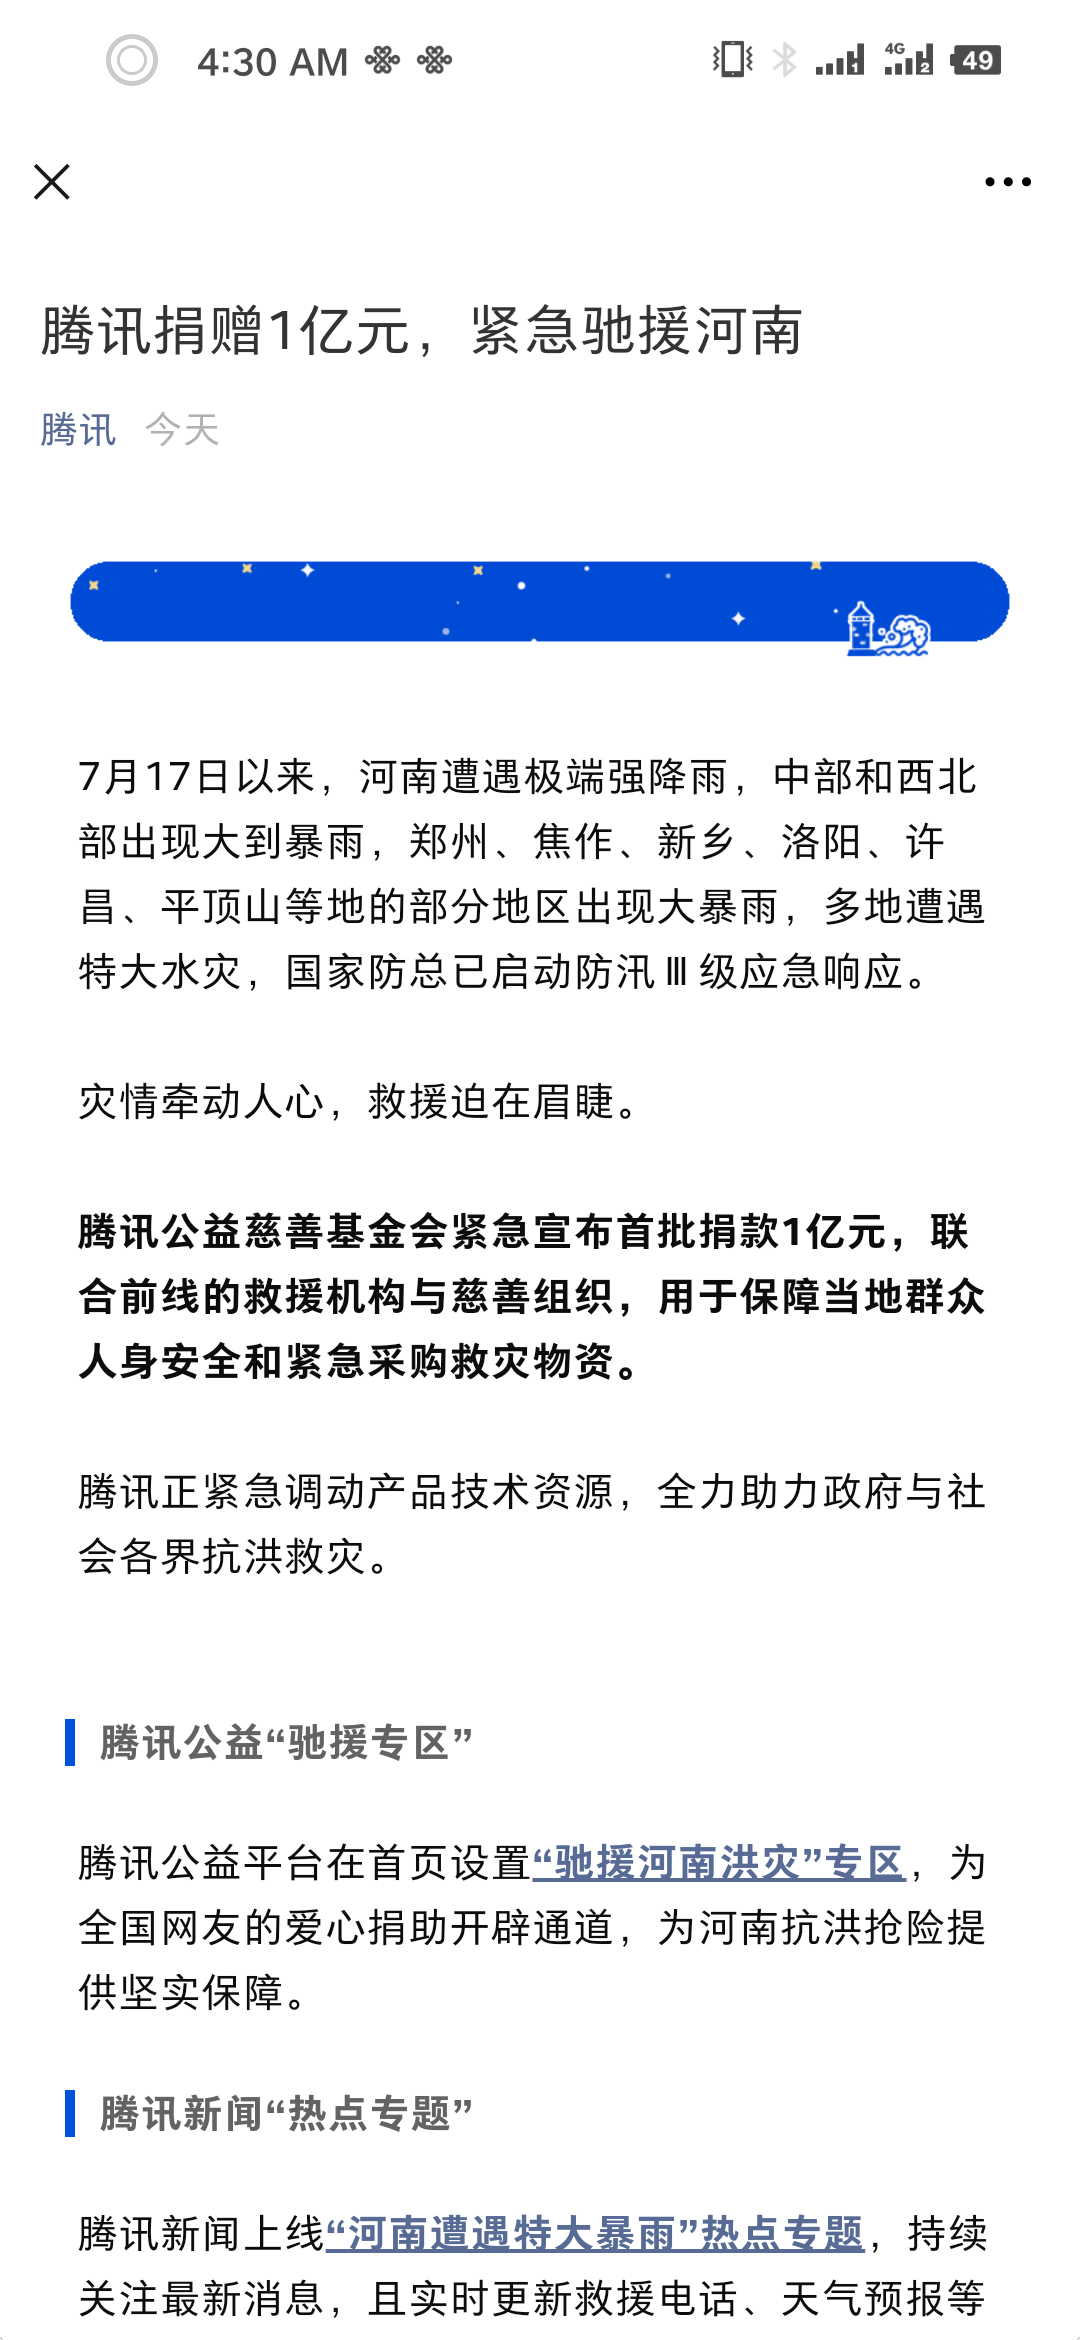 腾讯宣布为河南捐款一亿 为河南紧急采购救援物资